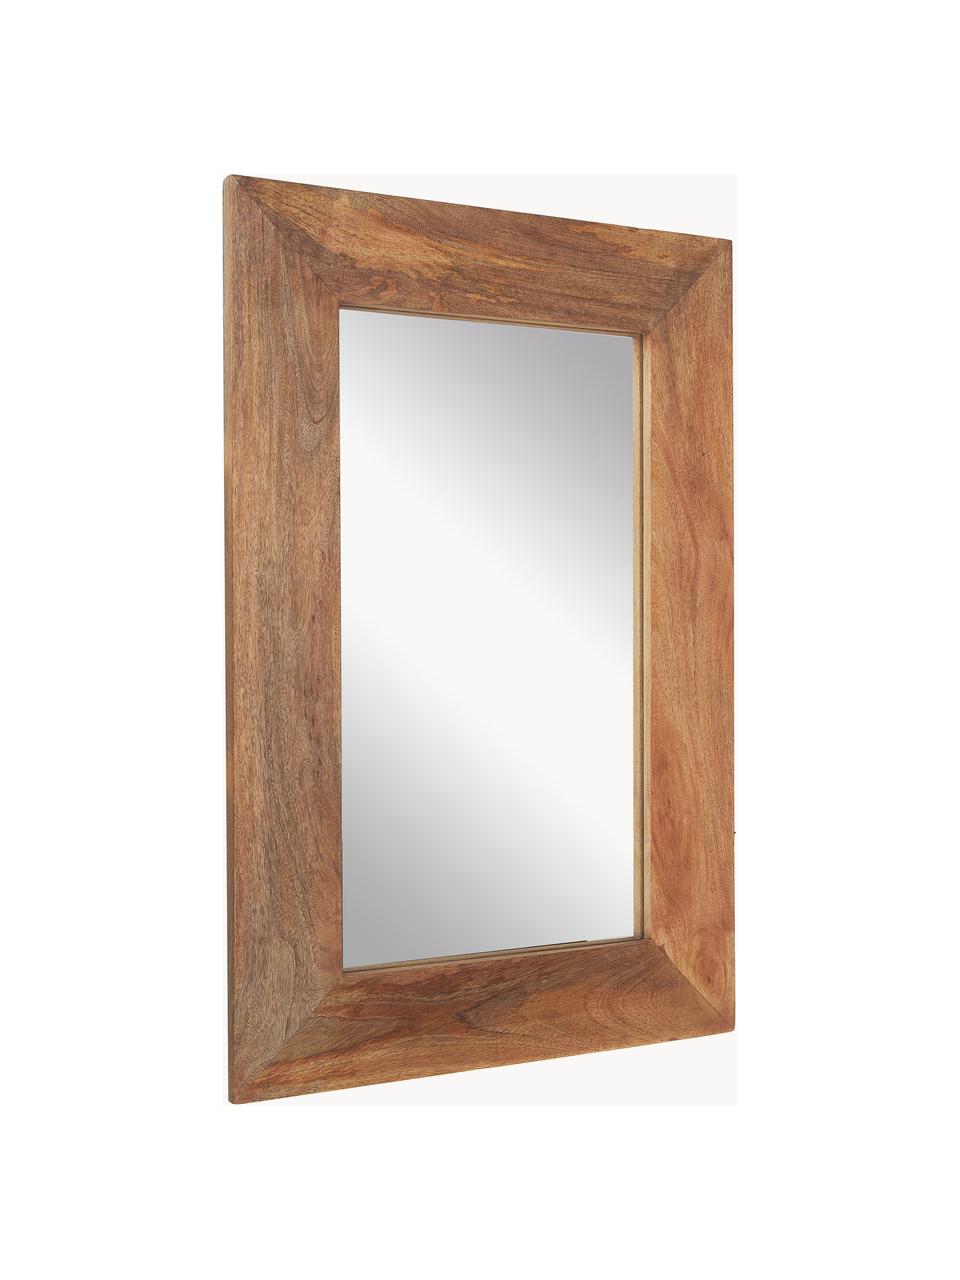 Obdélníkové nástěnné zrcadlo z mangového dřeva Indigo, Mangové dřevo, Š 61 cm, V 92 cm